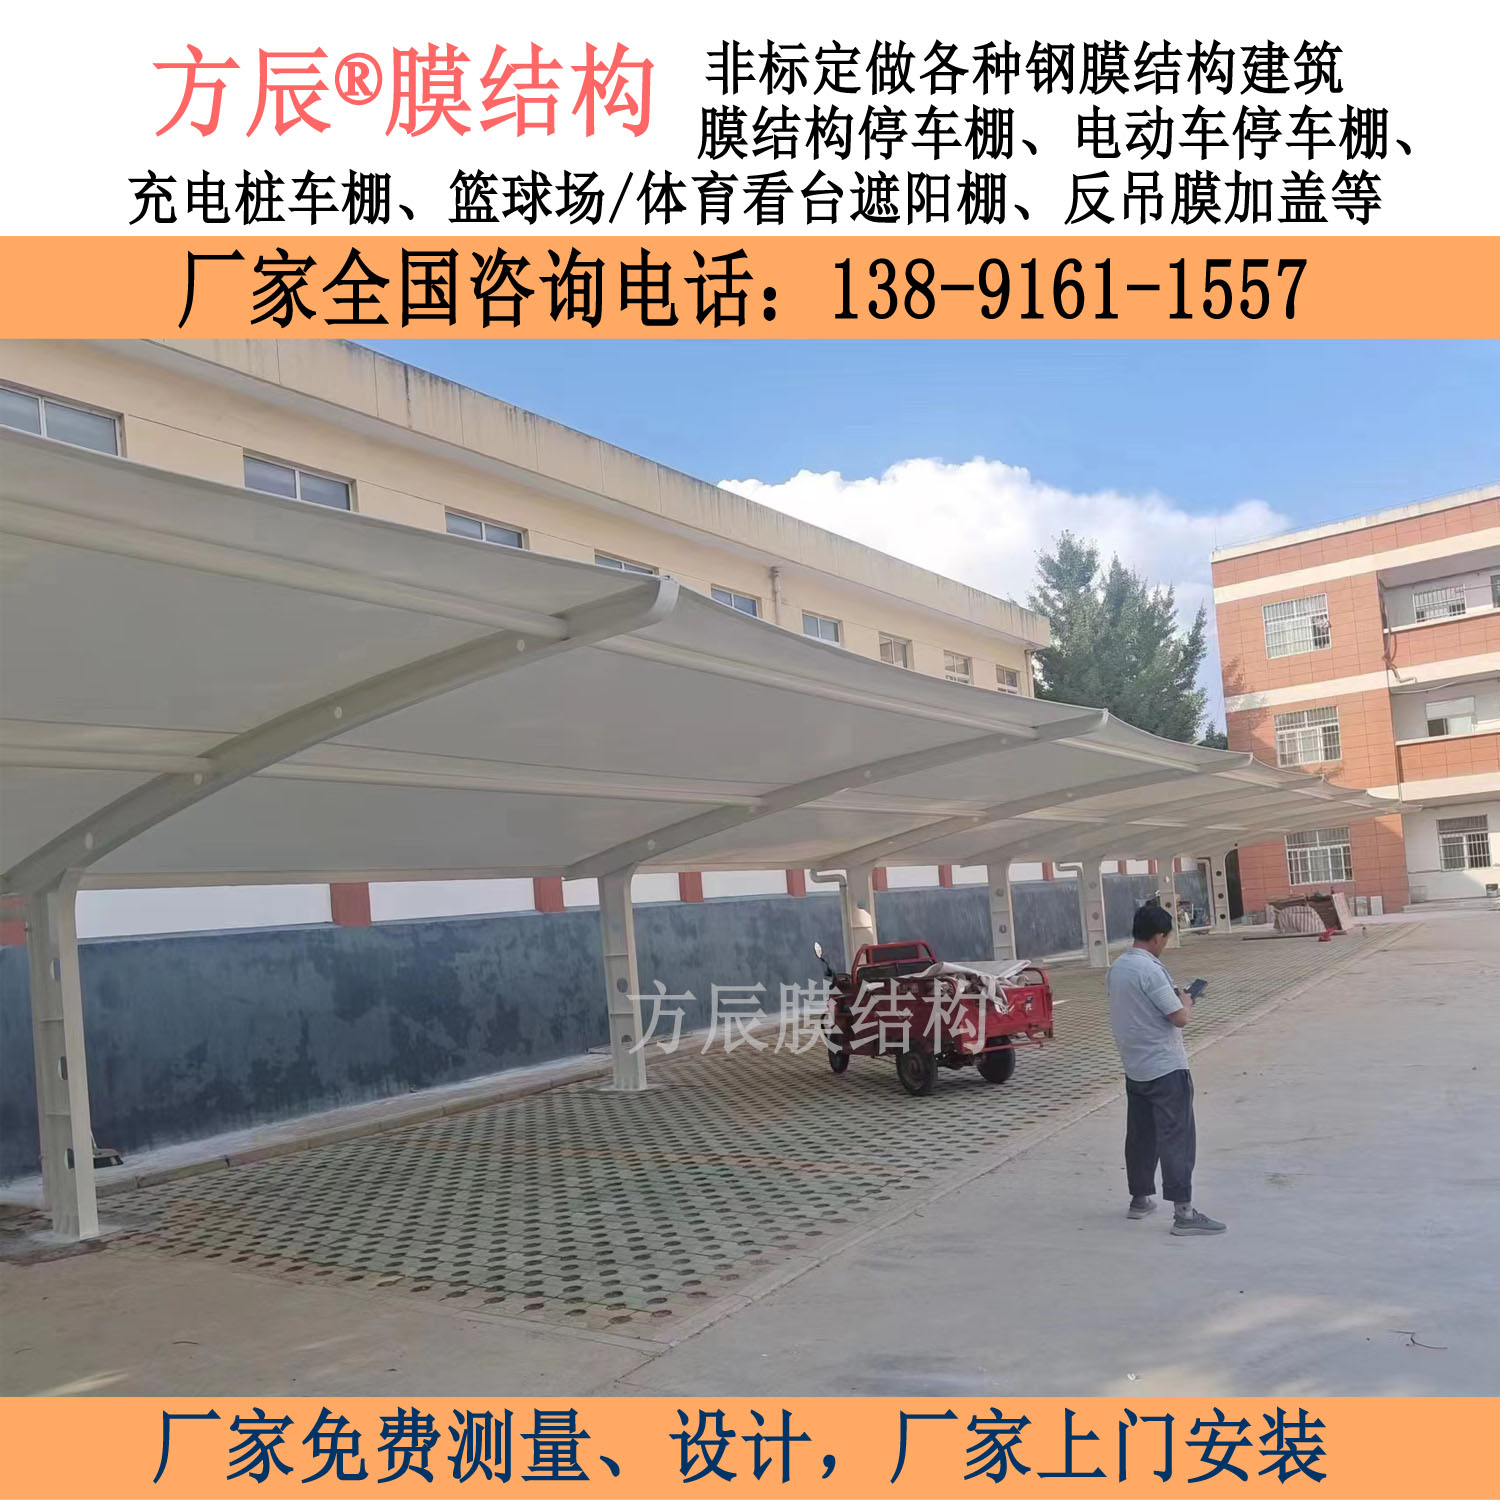 陕西省宝鸡市千阳县草碧镇中心小学膜结构停车棚项目